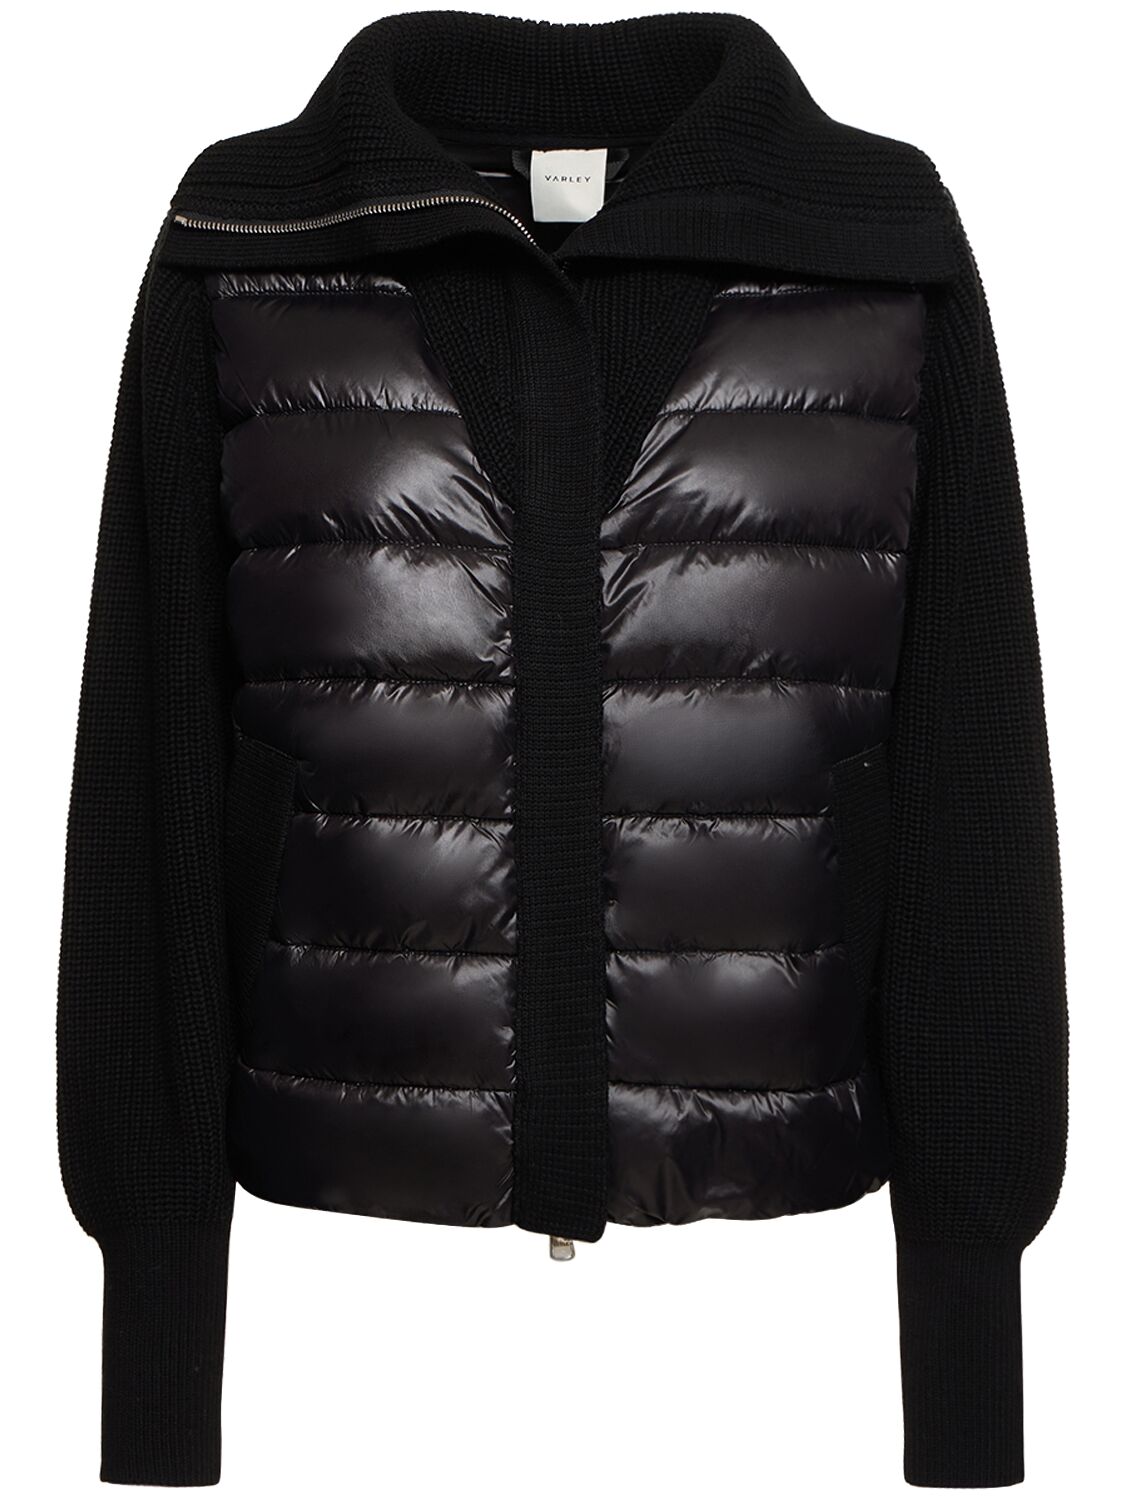 Varley Montrose Zip-up Jacket W/ Knit Sleeves In Black